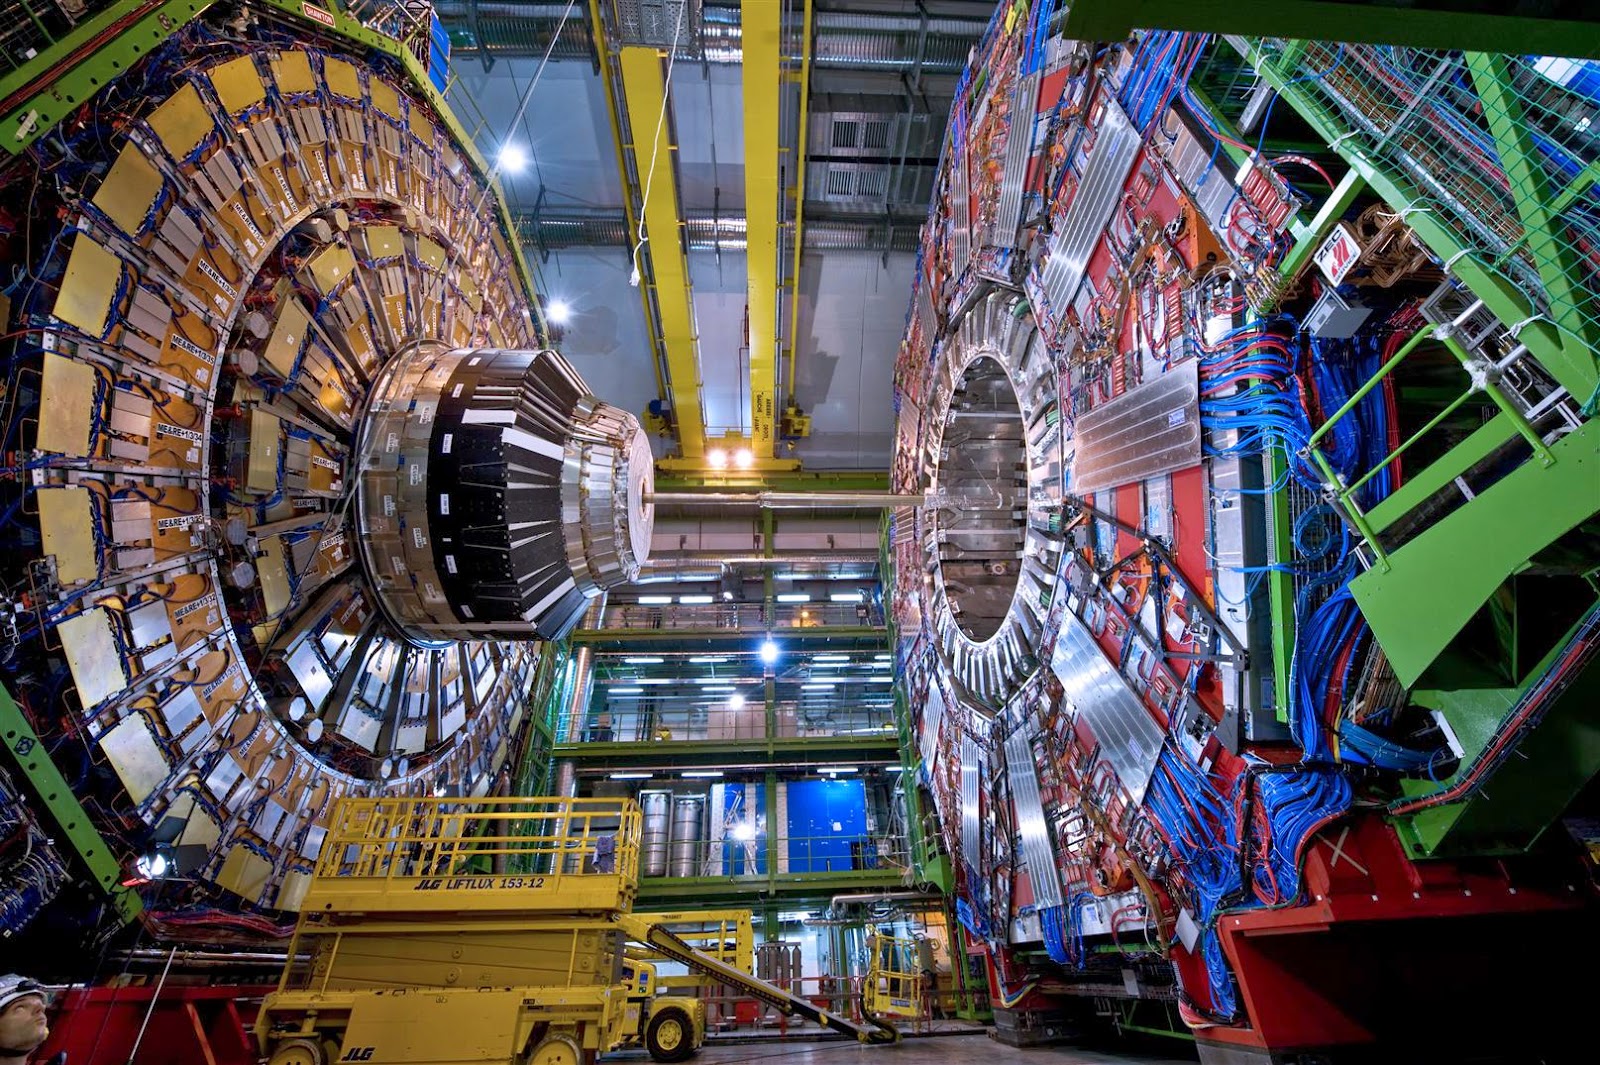  Γίνεται κόμβος του CERN το ΤΕΙ Καβάλας